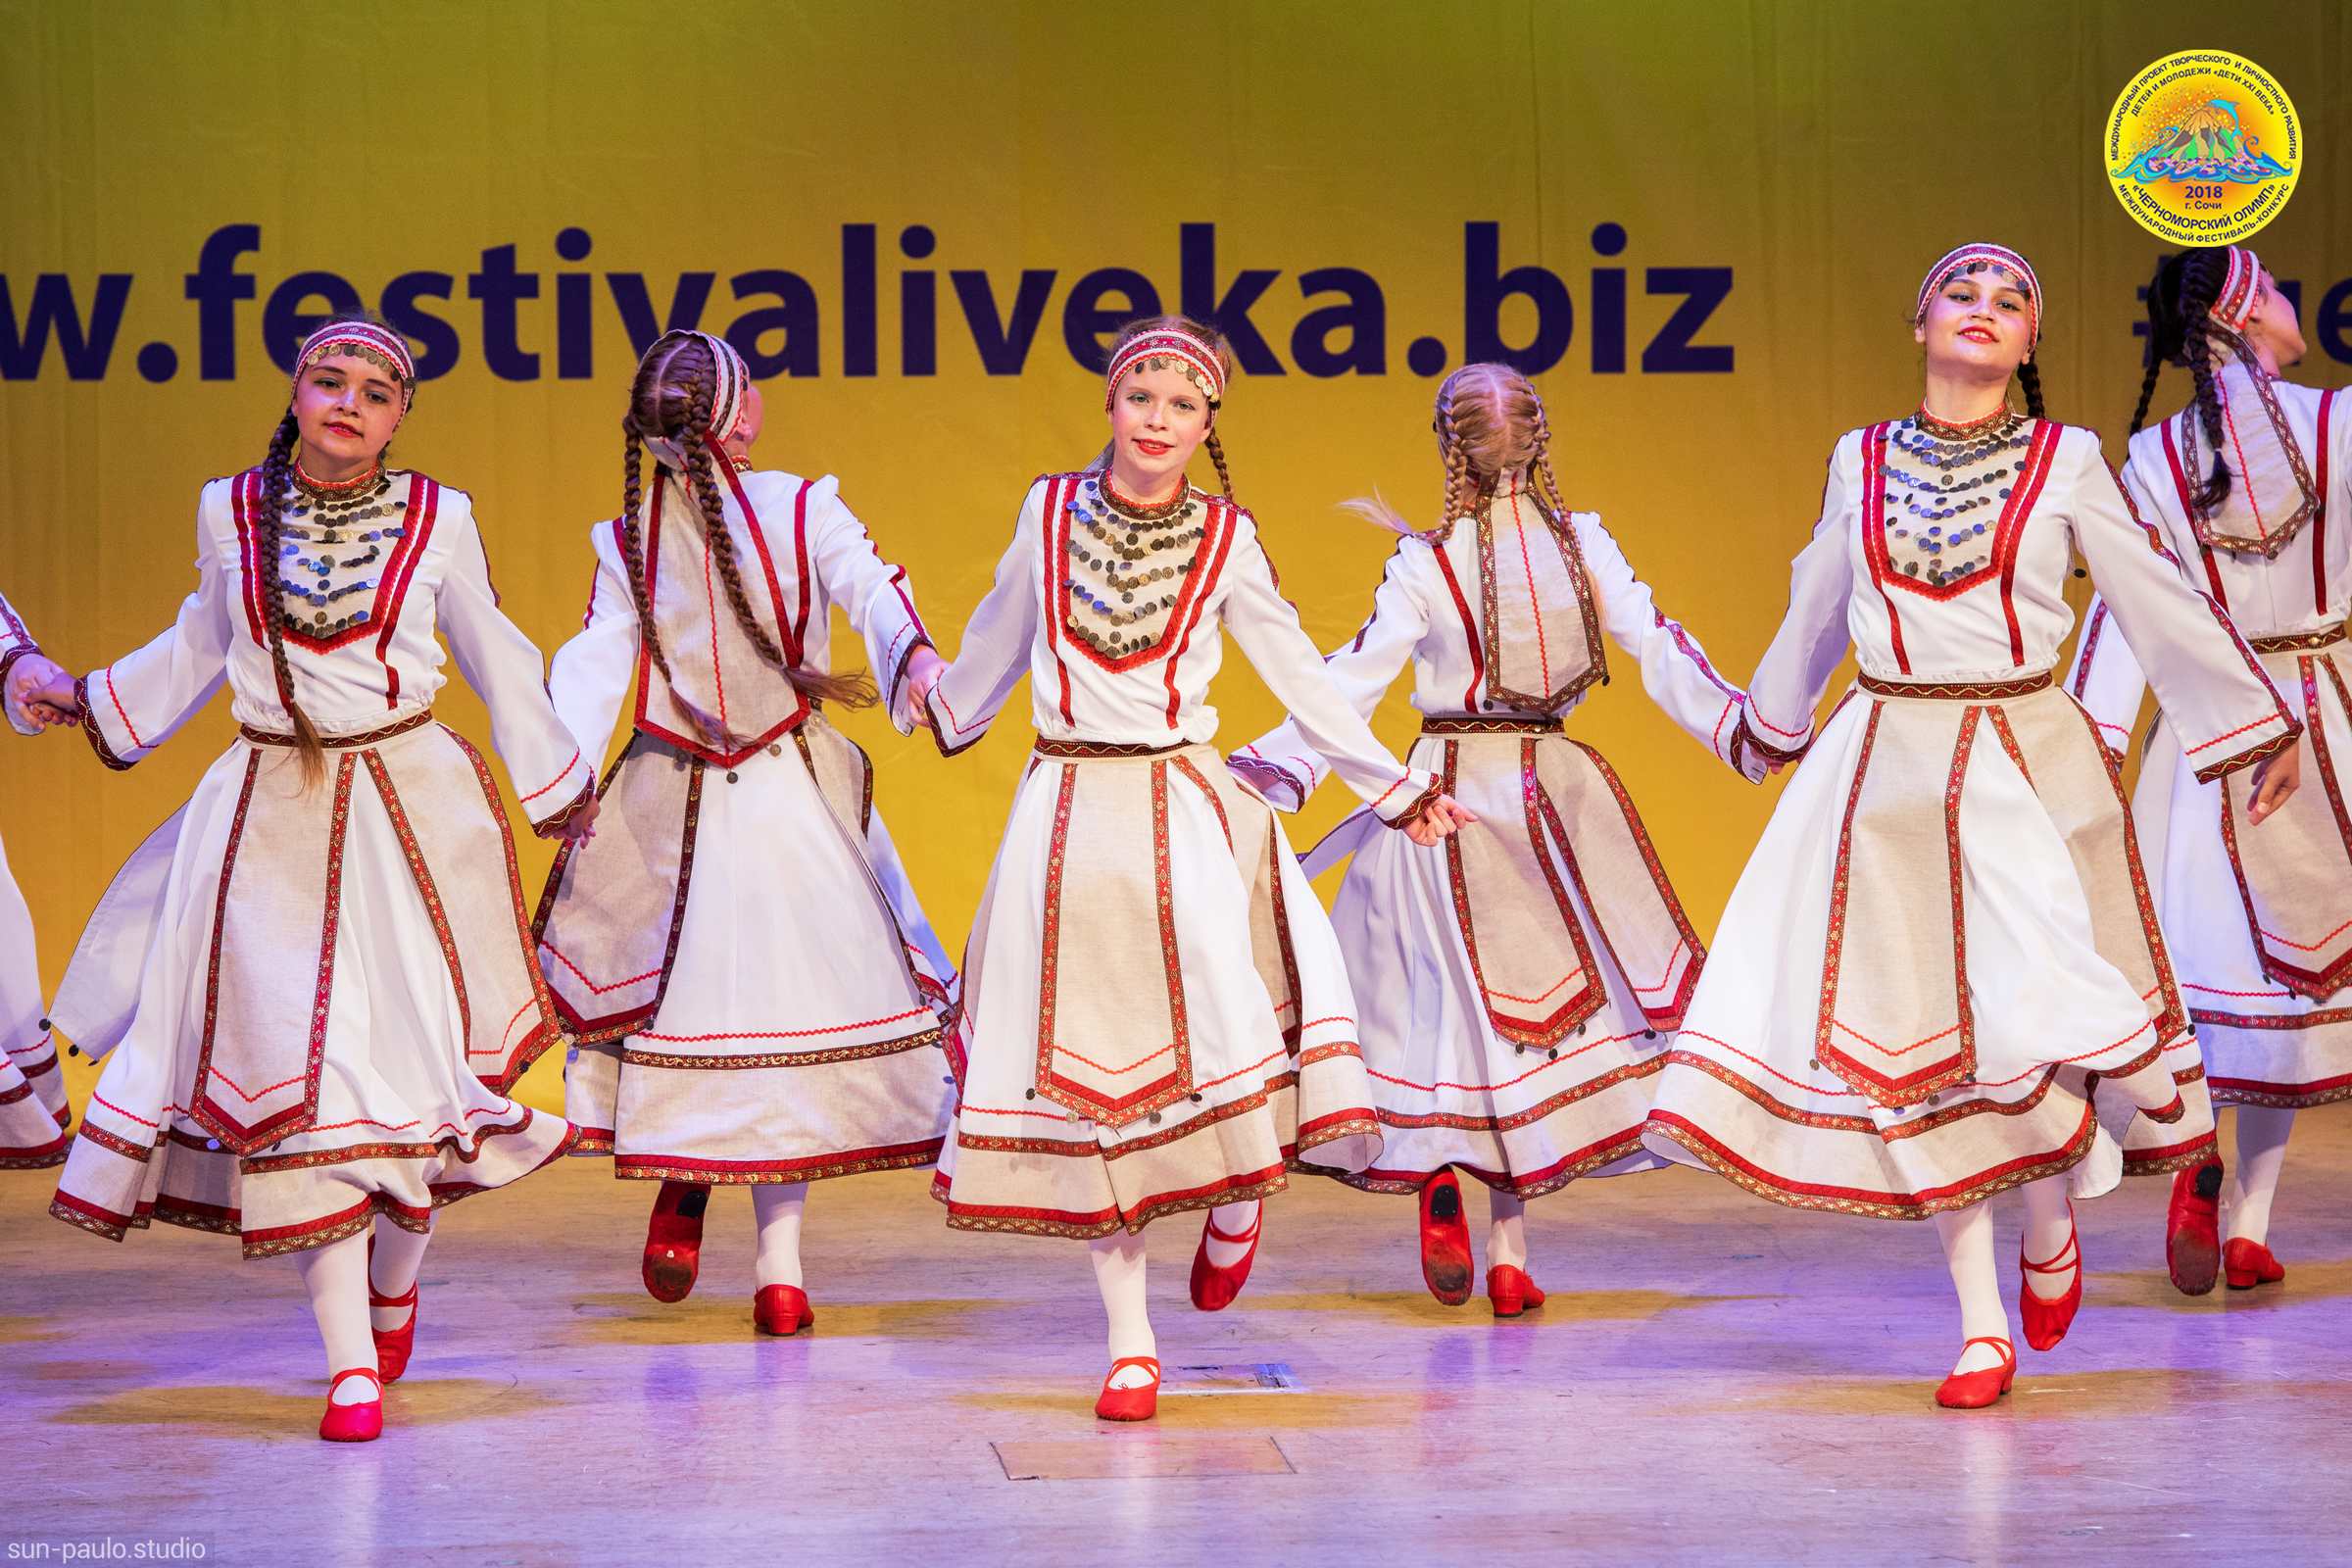 Танец Марийских красавиц. Солнцецвет в Сочи на фестивале «Черноморский Олимп».